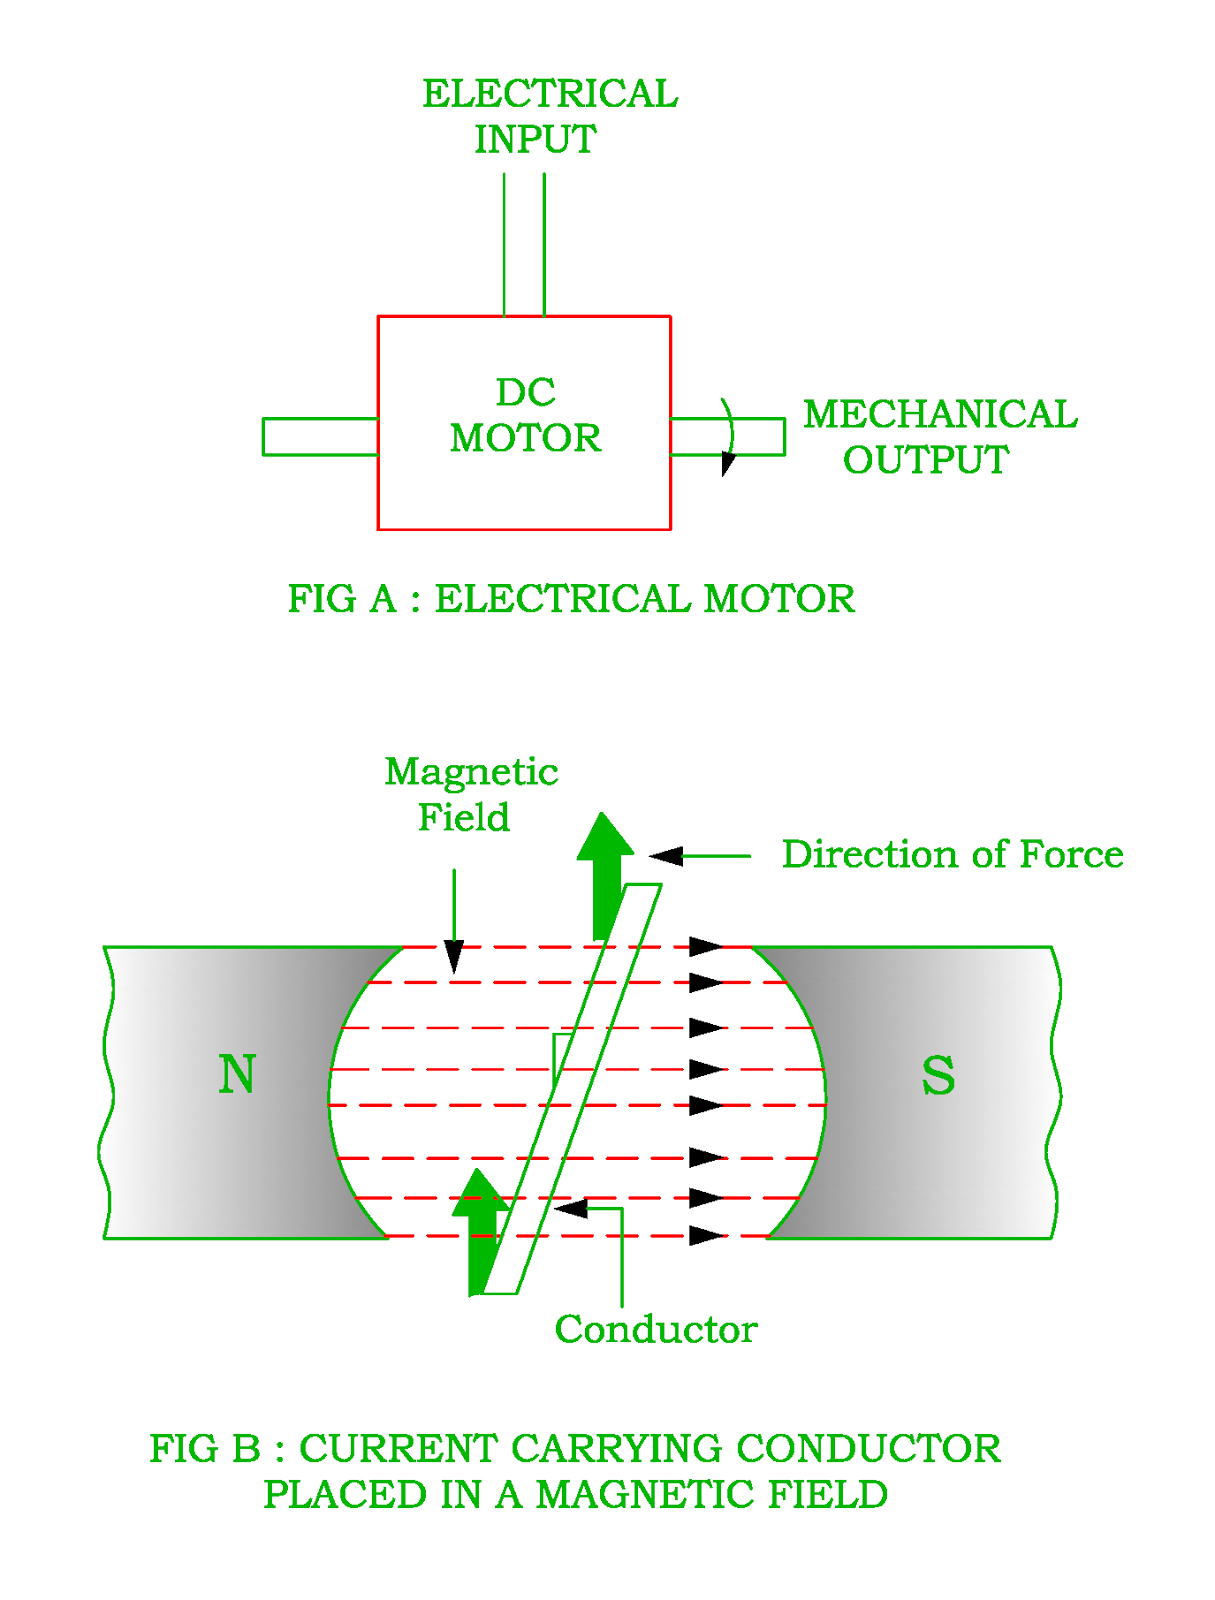 Working Principle of DC Motor